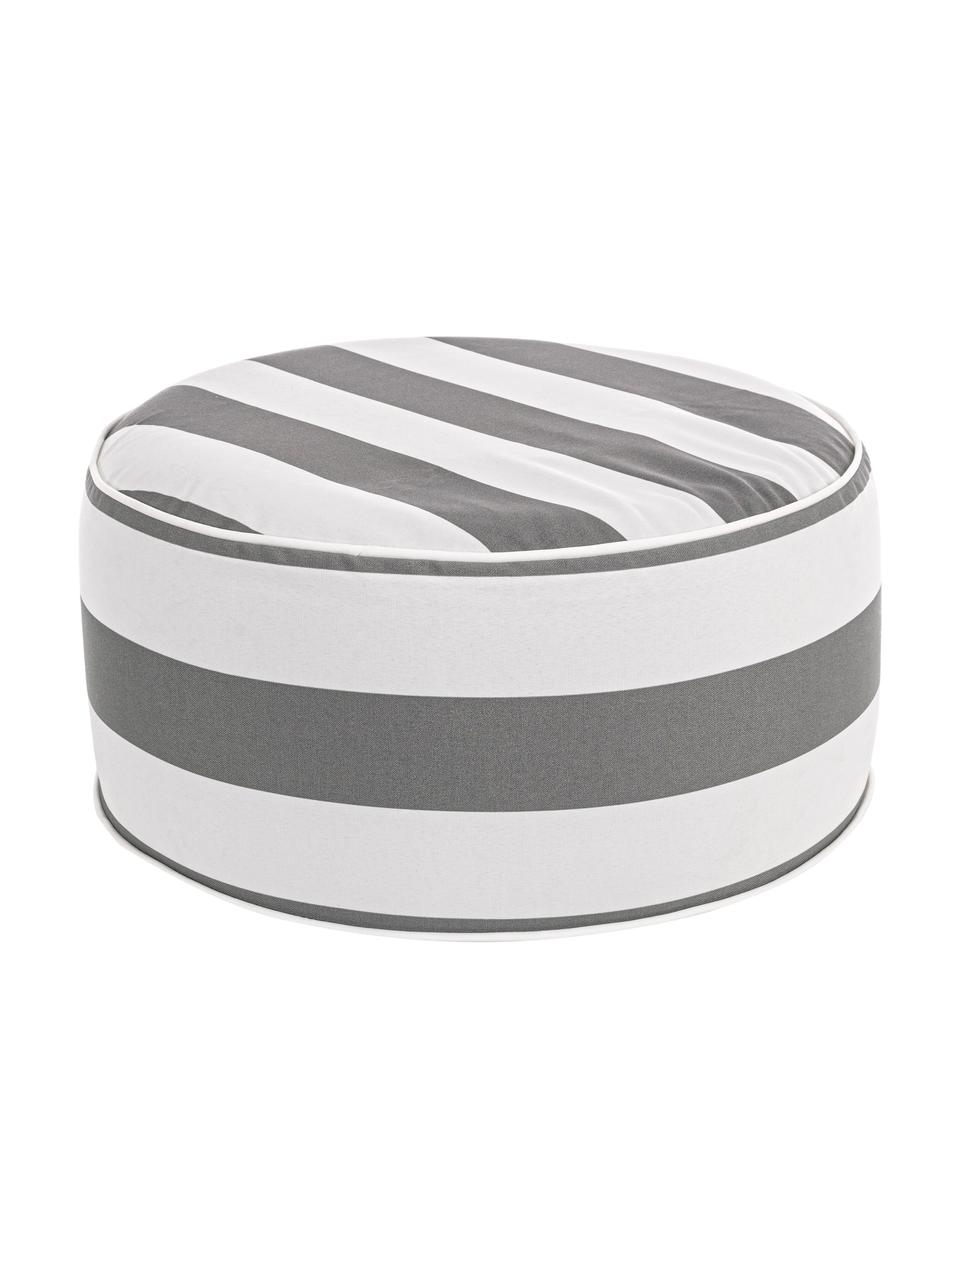 Opblaasbare buitenpoef Stripes in wit/grijs, Bekleding: 100% polyester stof (200 , Wit, grijs, Ø 53 x H 23 cm